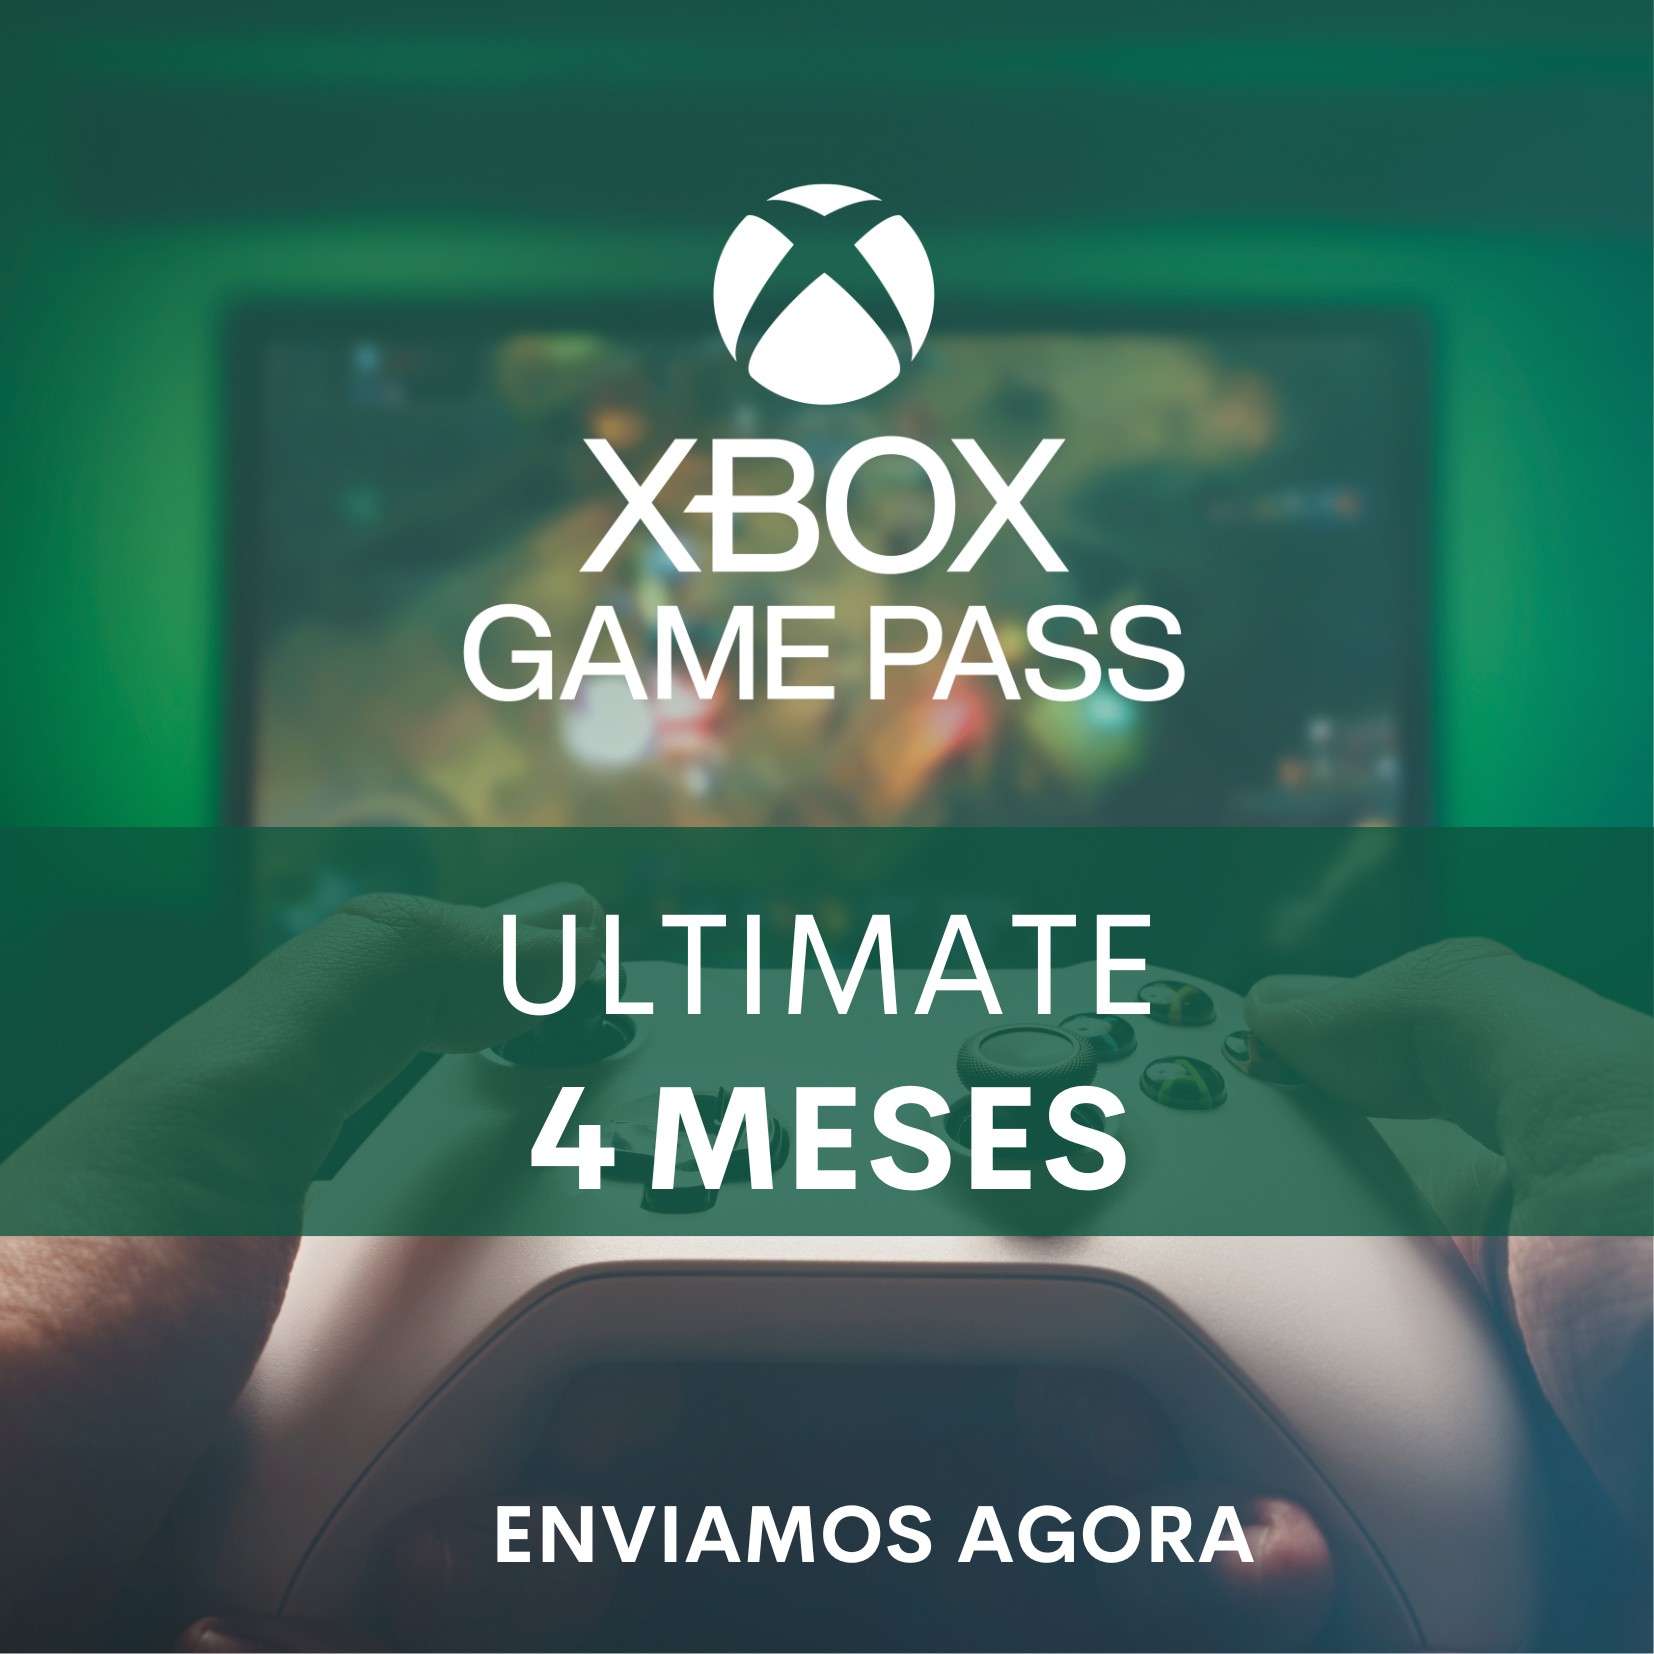 Comprar Cartão Xbox Game Pass 12 Meses